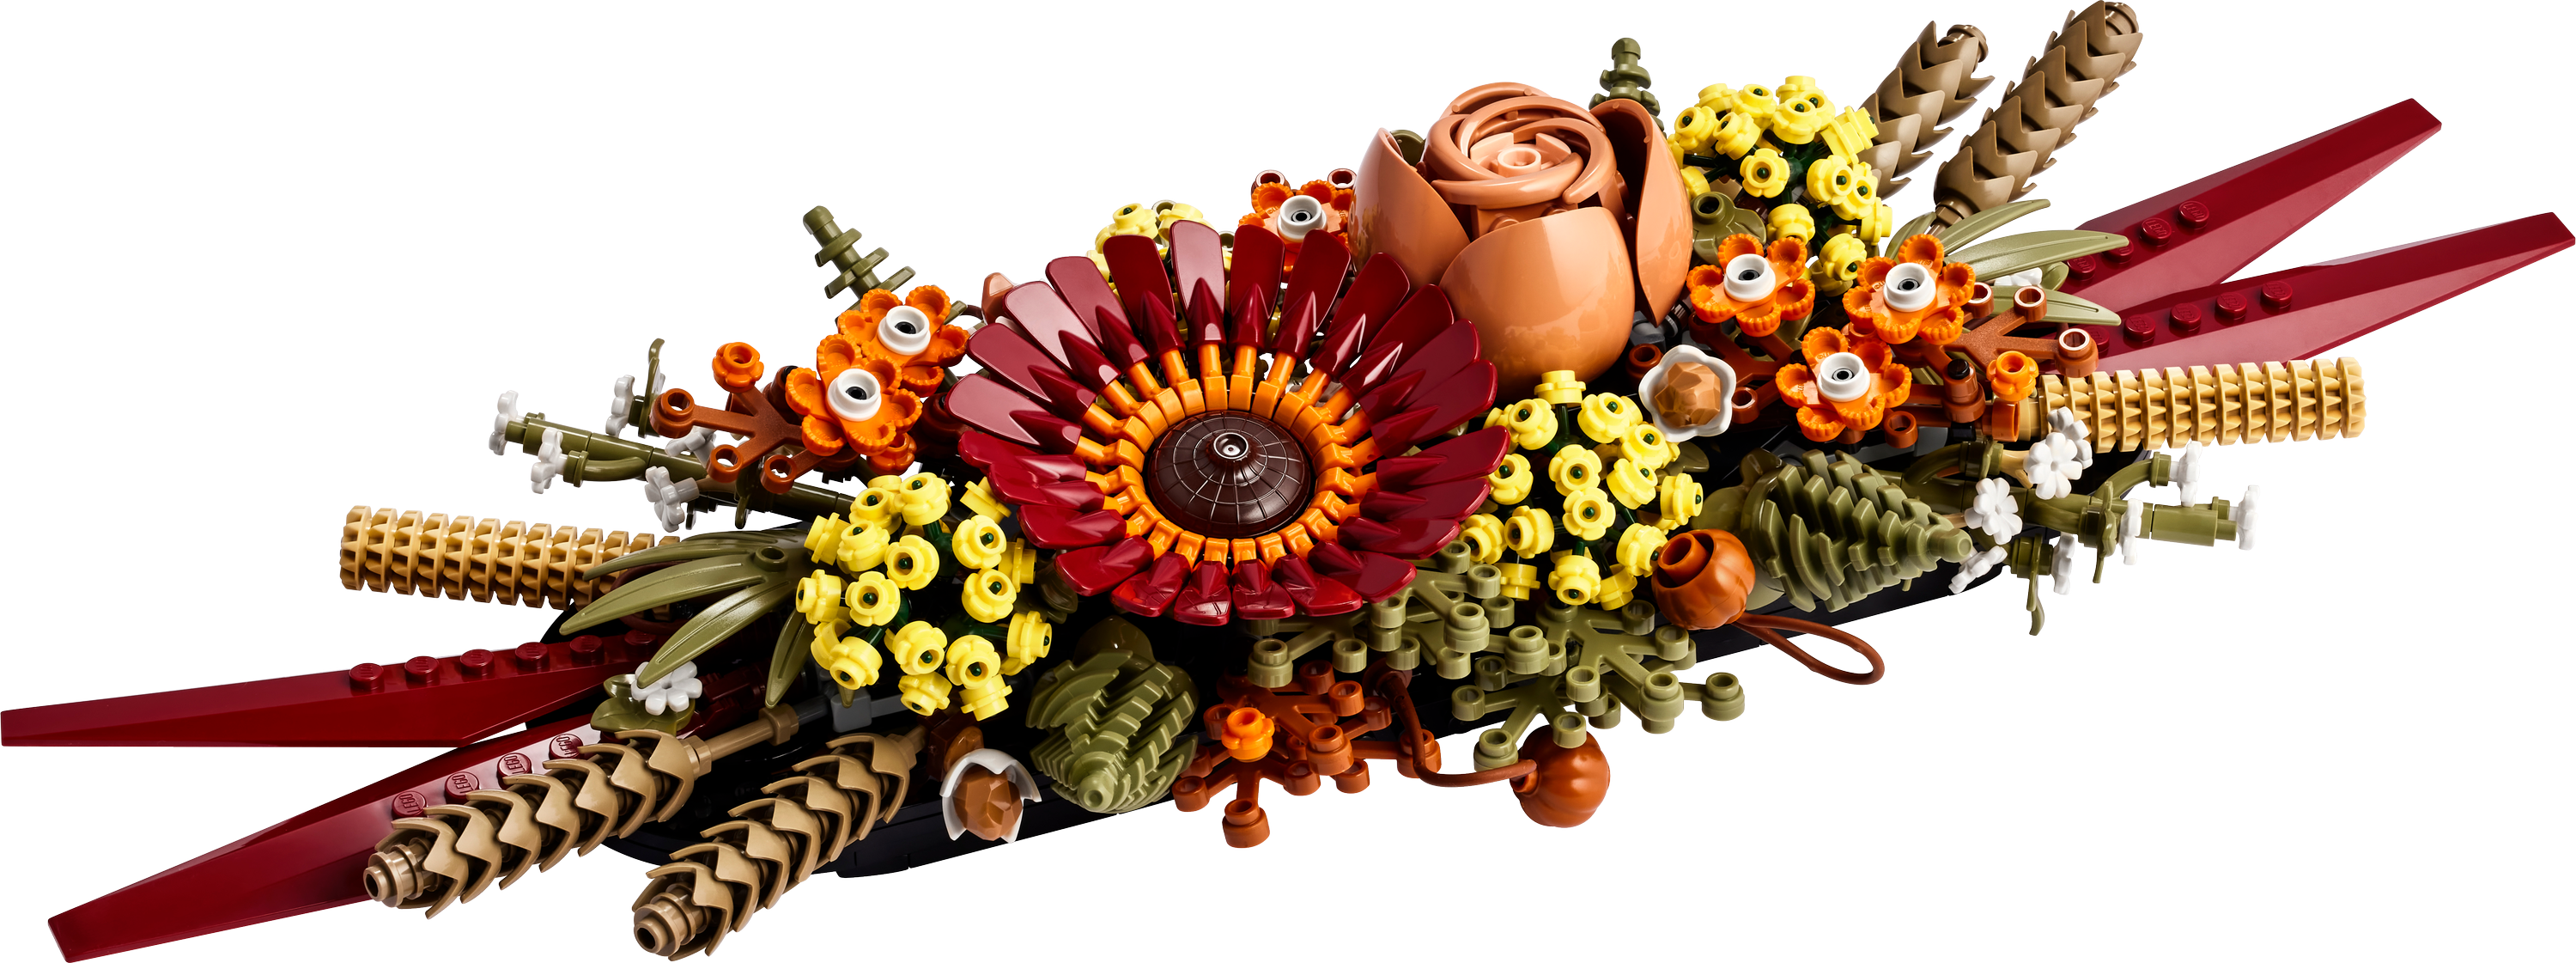 Конструктор LEGO Icons Botanical Икебана из сухоцветов, 812 деталей (10314) - фото 2